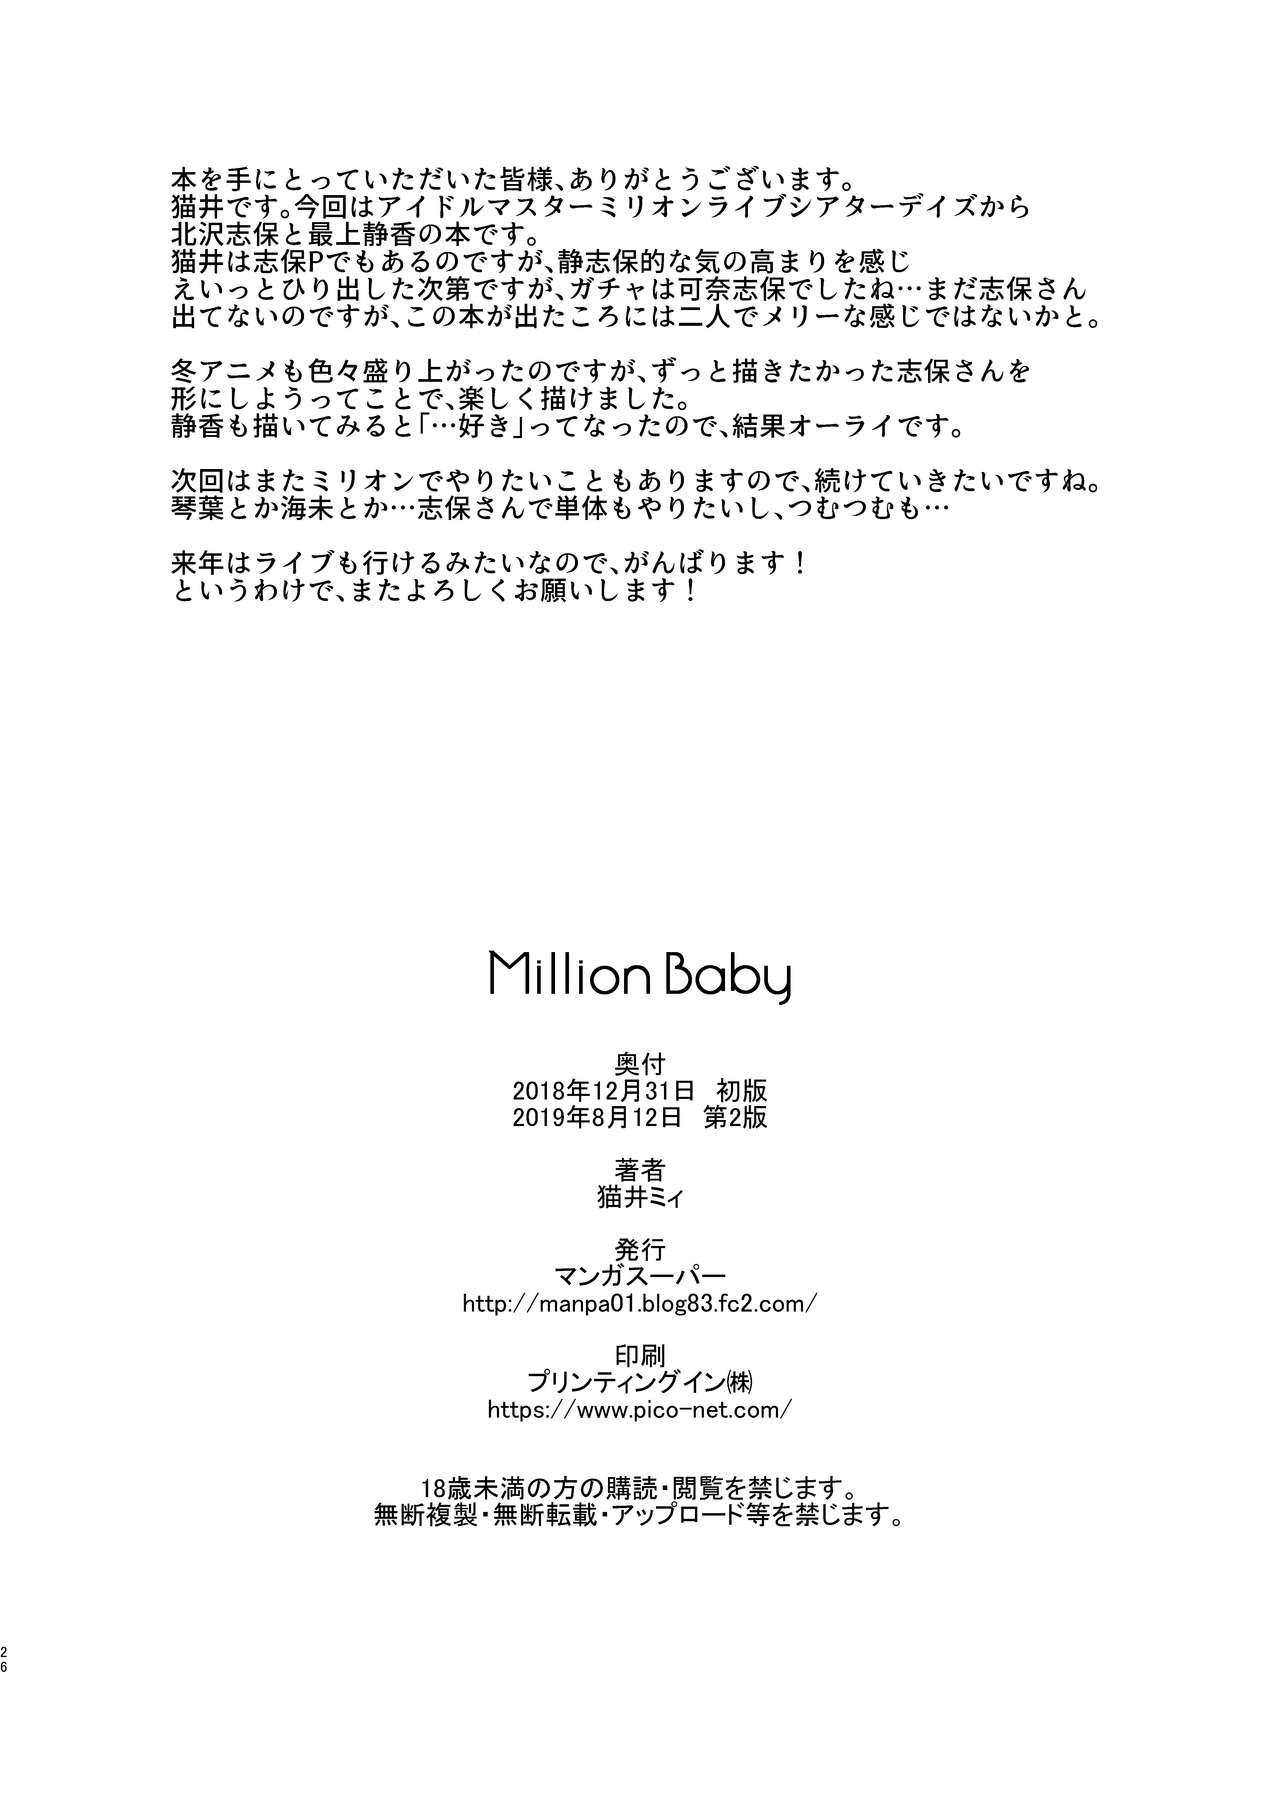 Million Baby 24